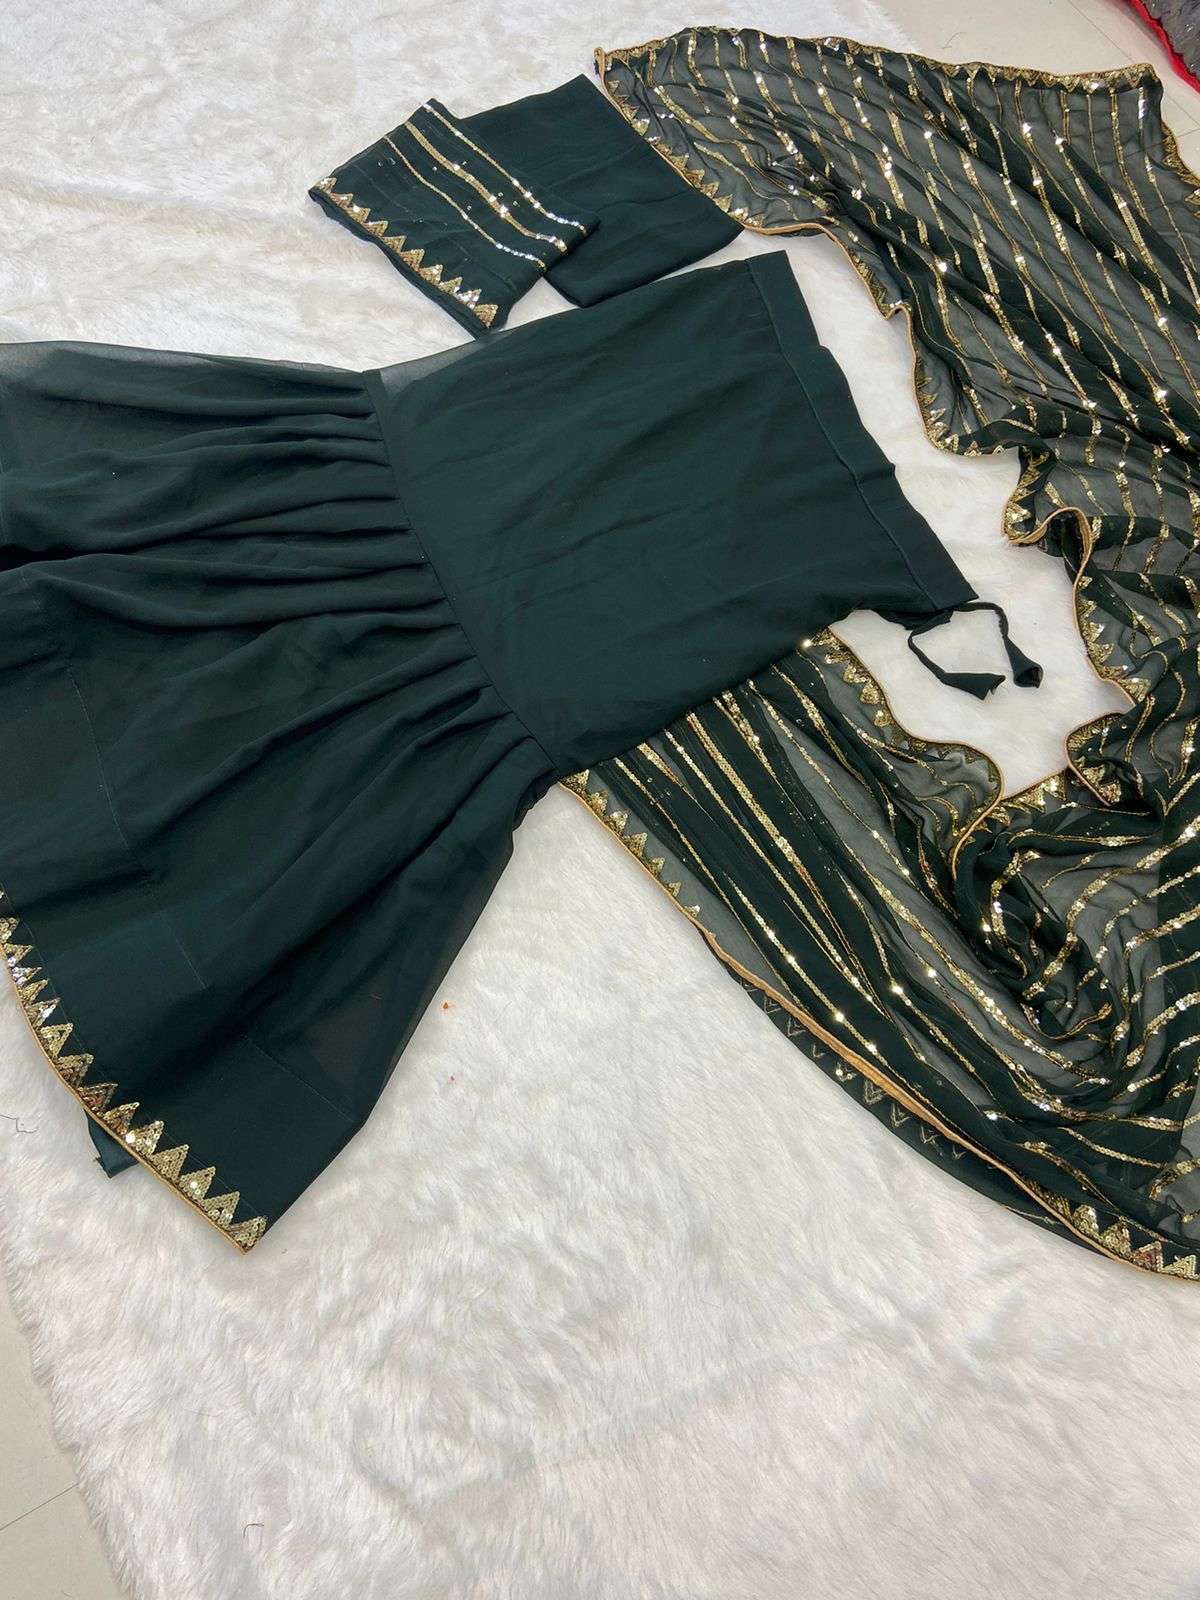 Buy ELLOXI Women's Stylish Black Ready To Wear Wedding Lehenga Saree With  Choli (LEMBOGEE LG-604 BLACK) at Amazon.in